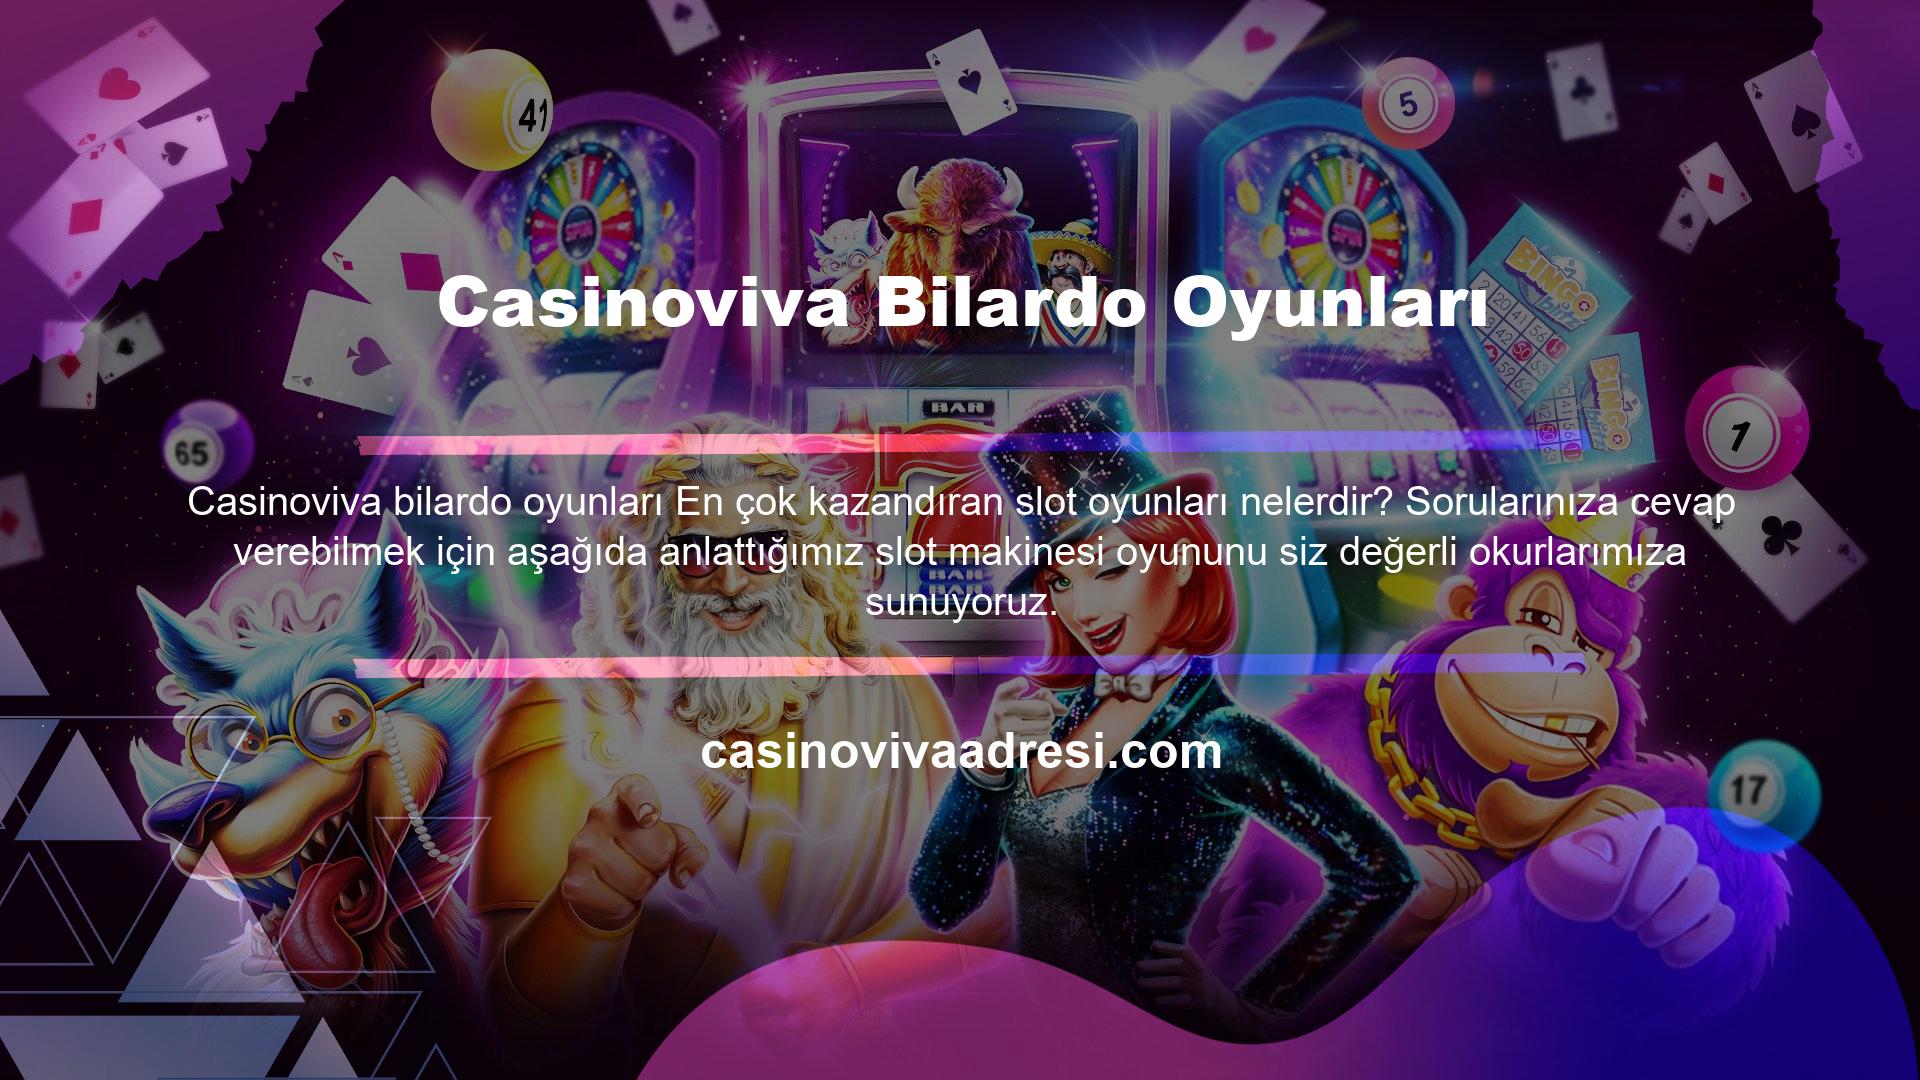 Casinoviva Bilardo Oyunları